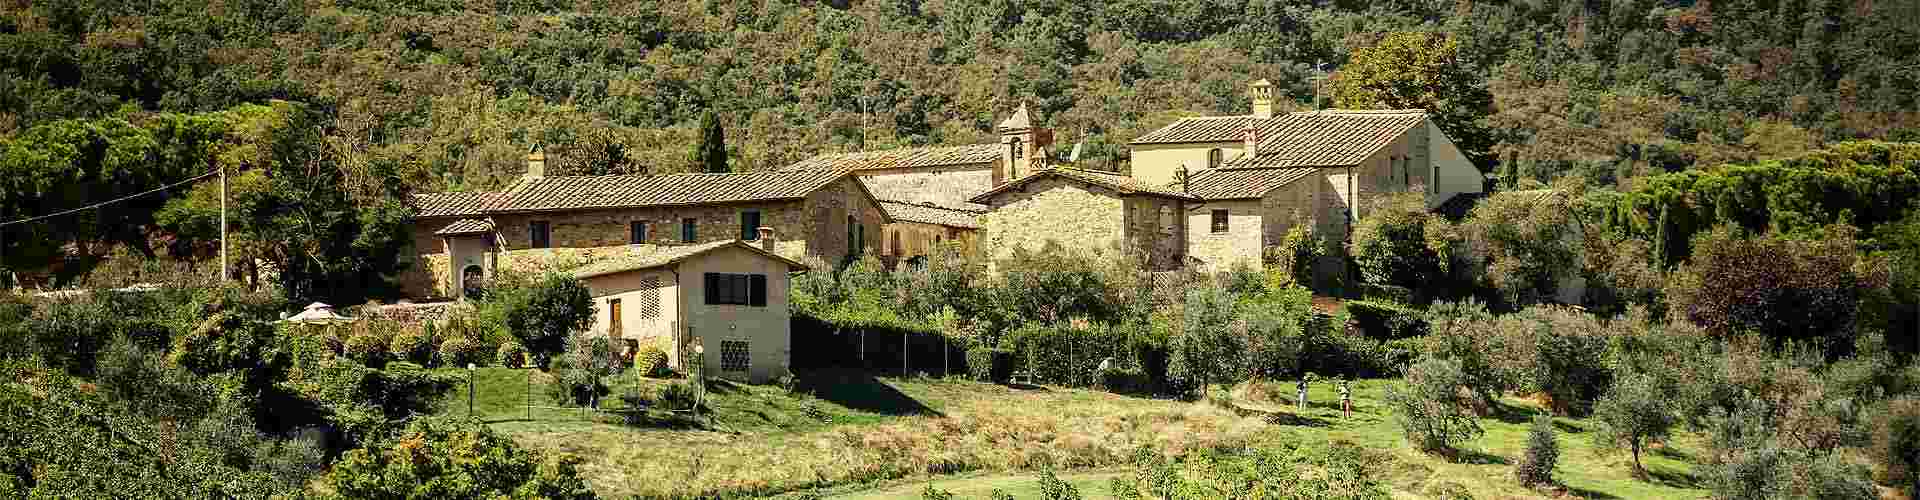 Casas rurales en Almuñécar
           
           


          
          
          
